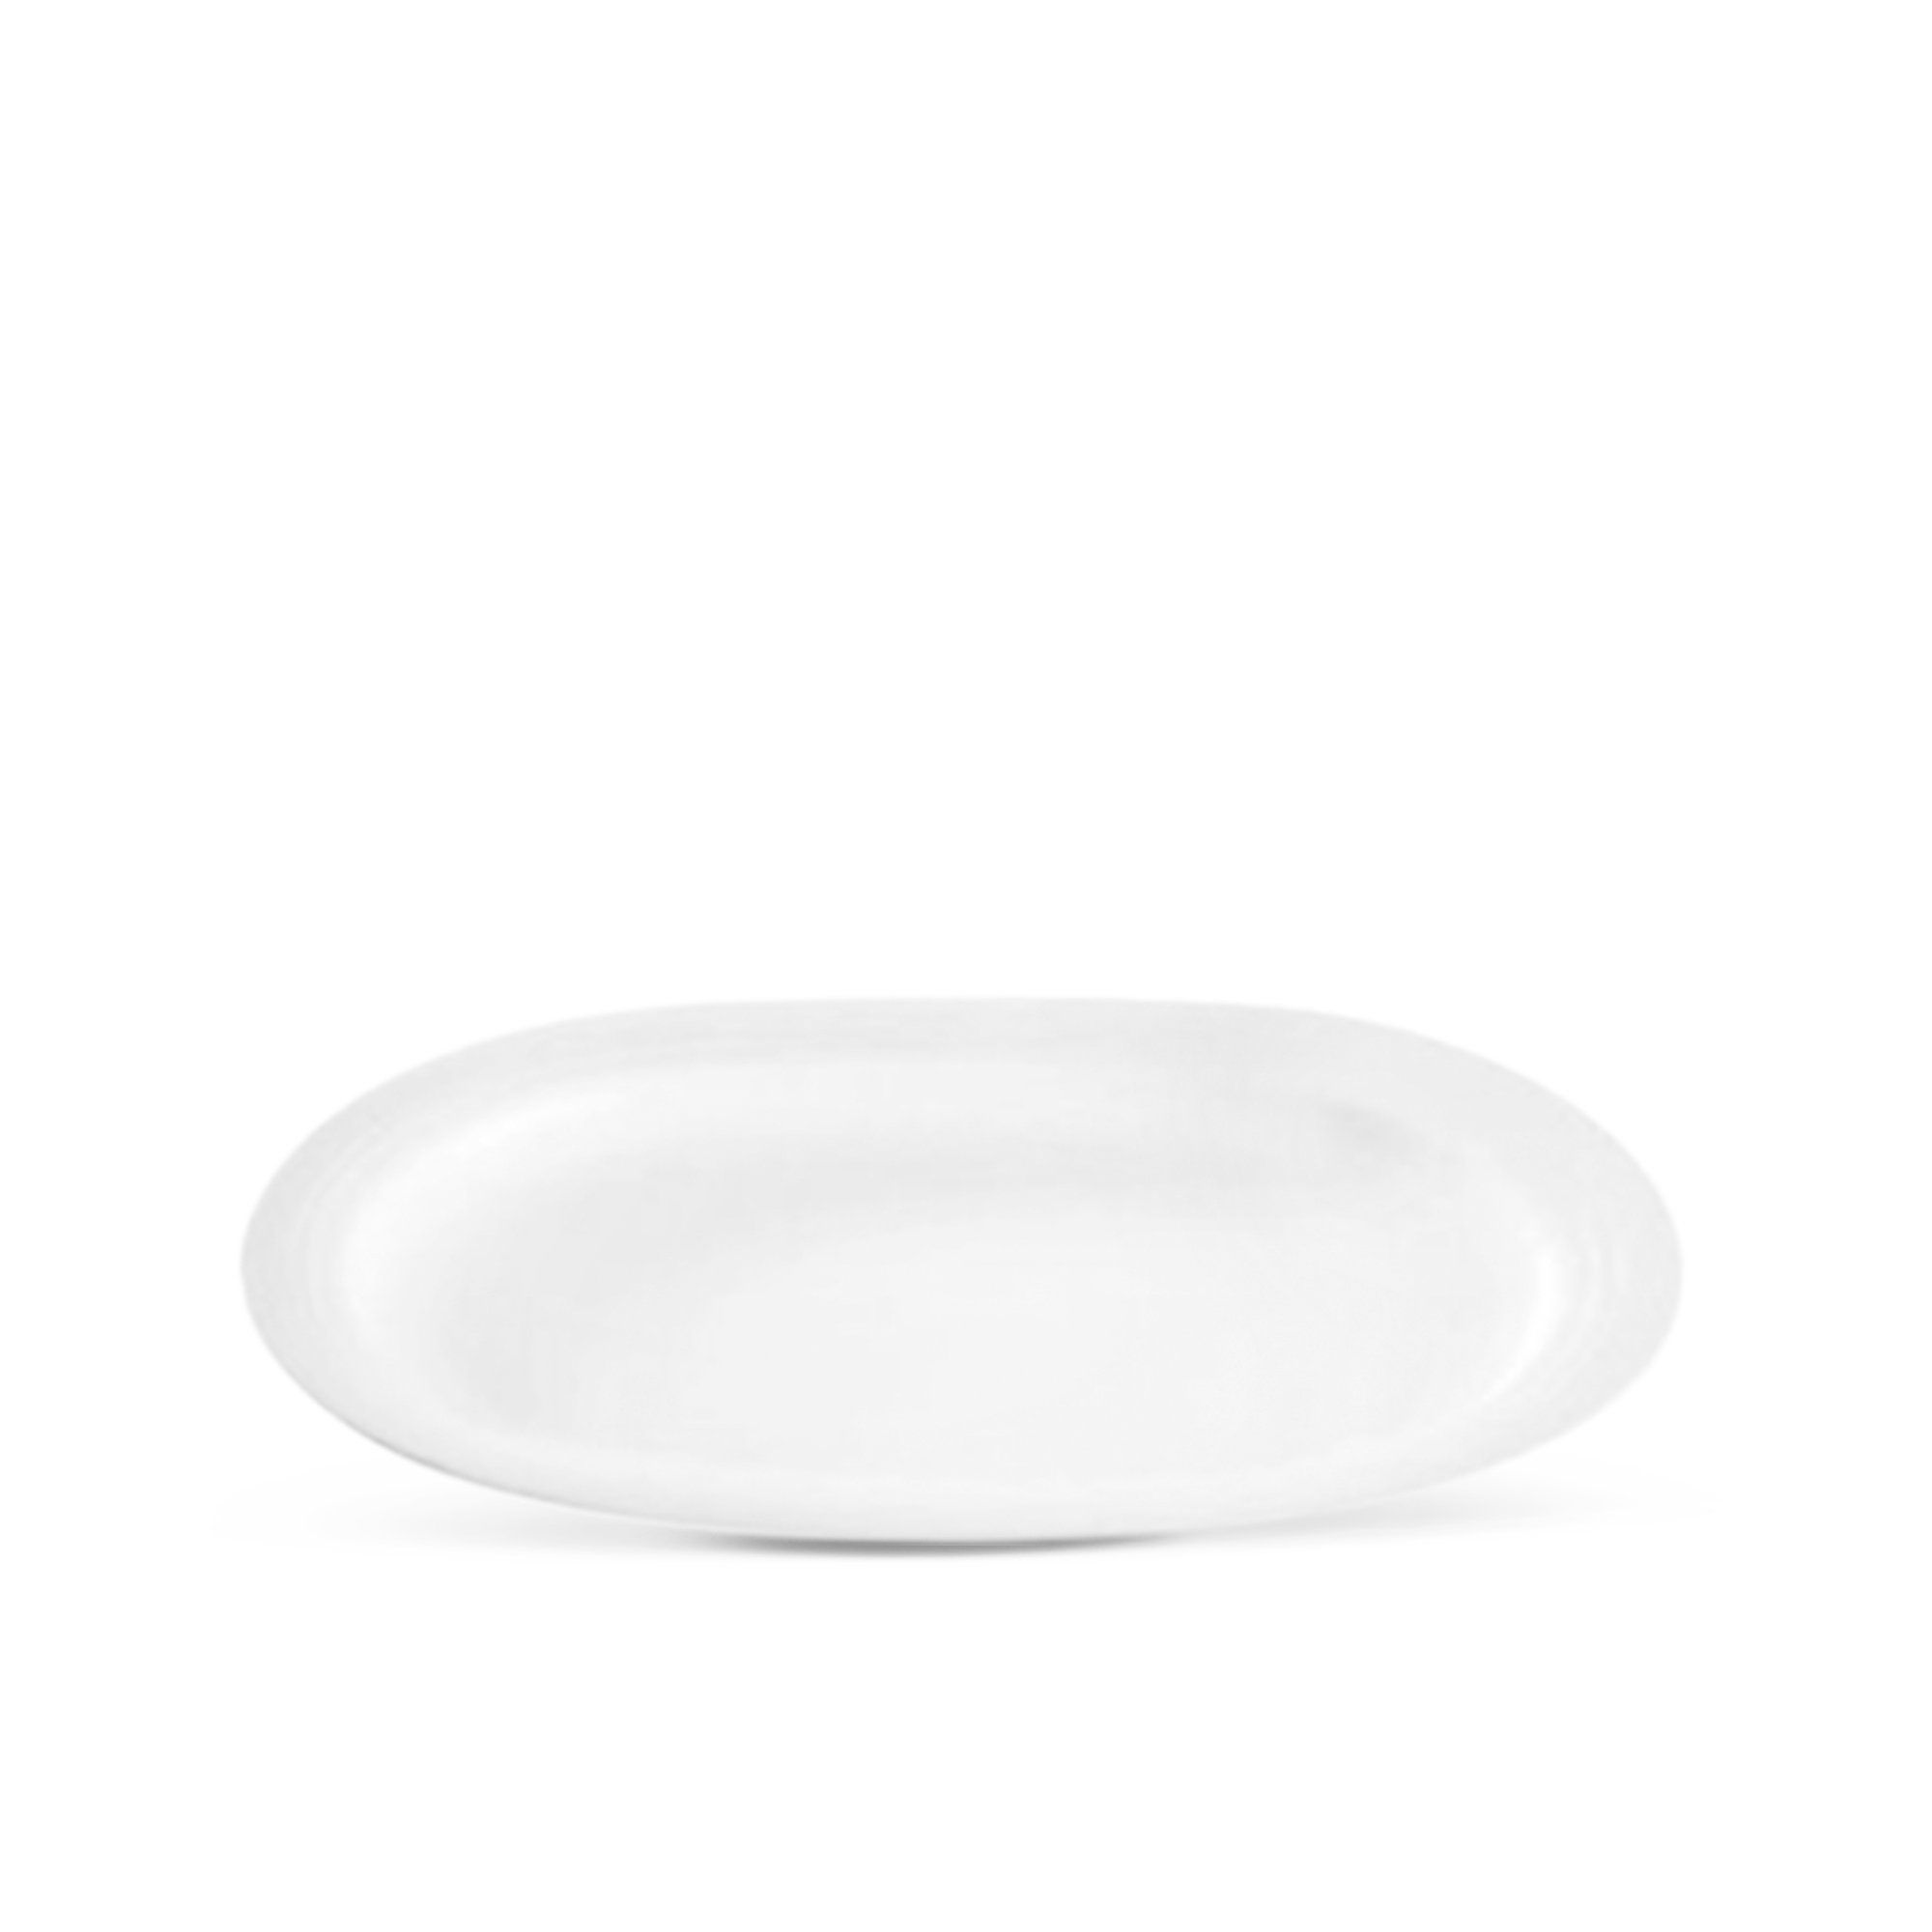  Đĩa Oval cỡ nhỏ (size S) dài 30,6cm 